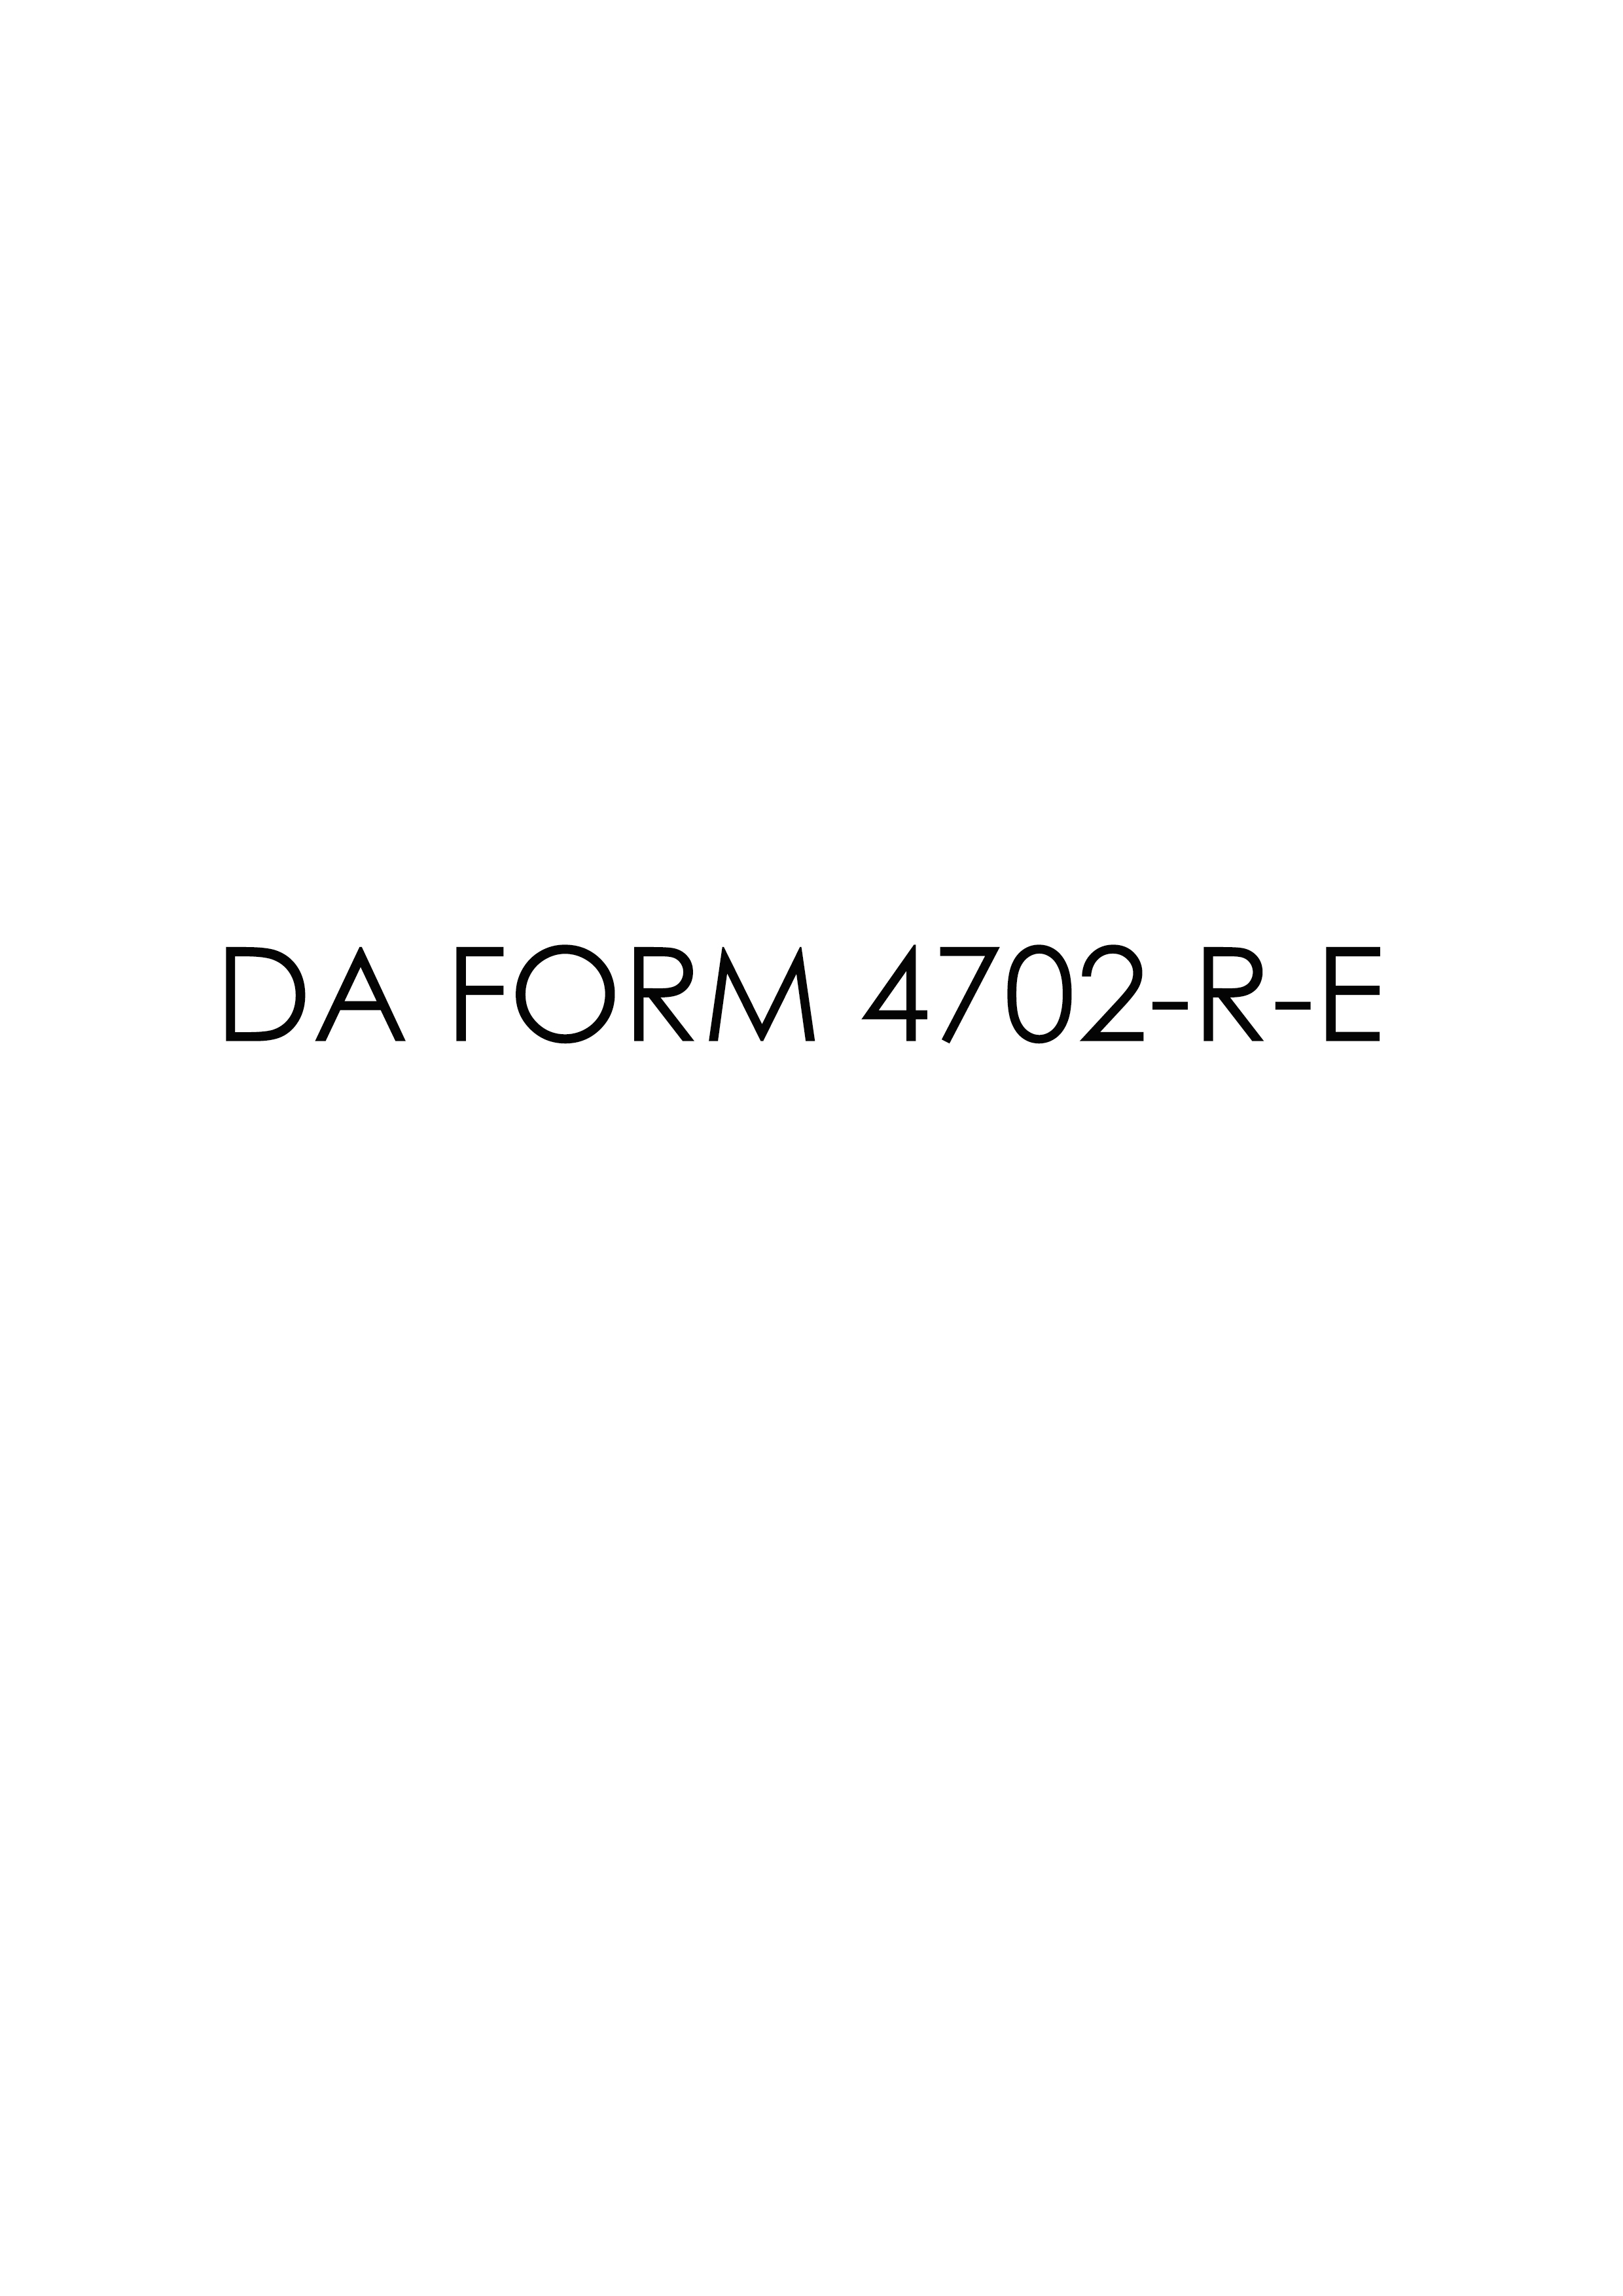 da Form 4702-R-E fillable